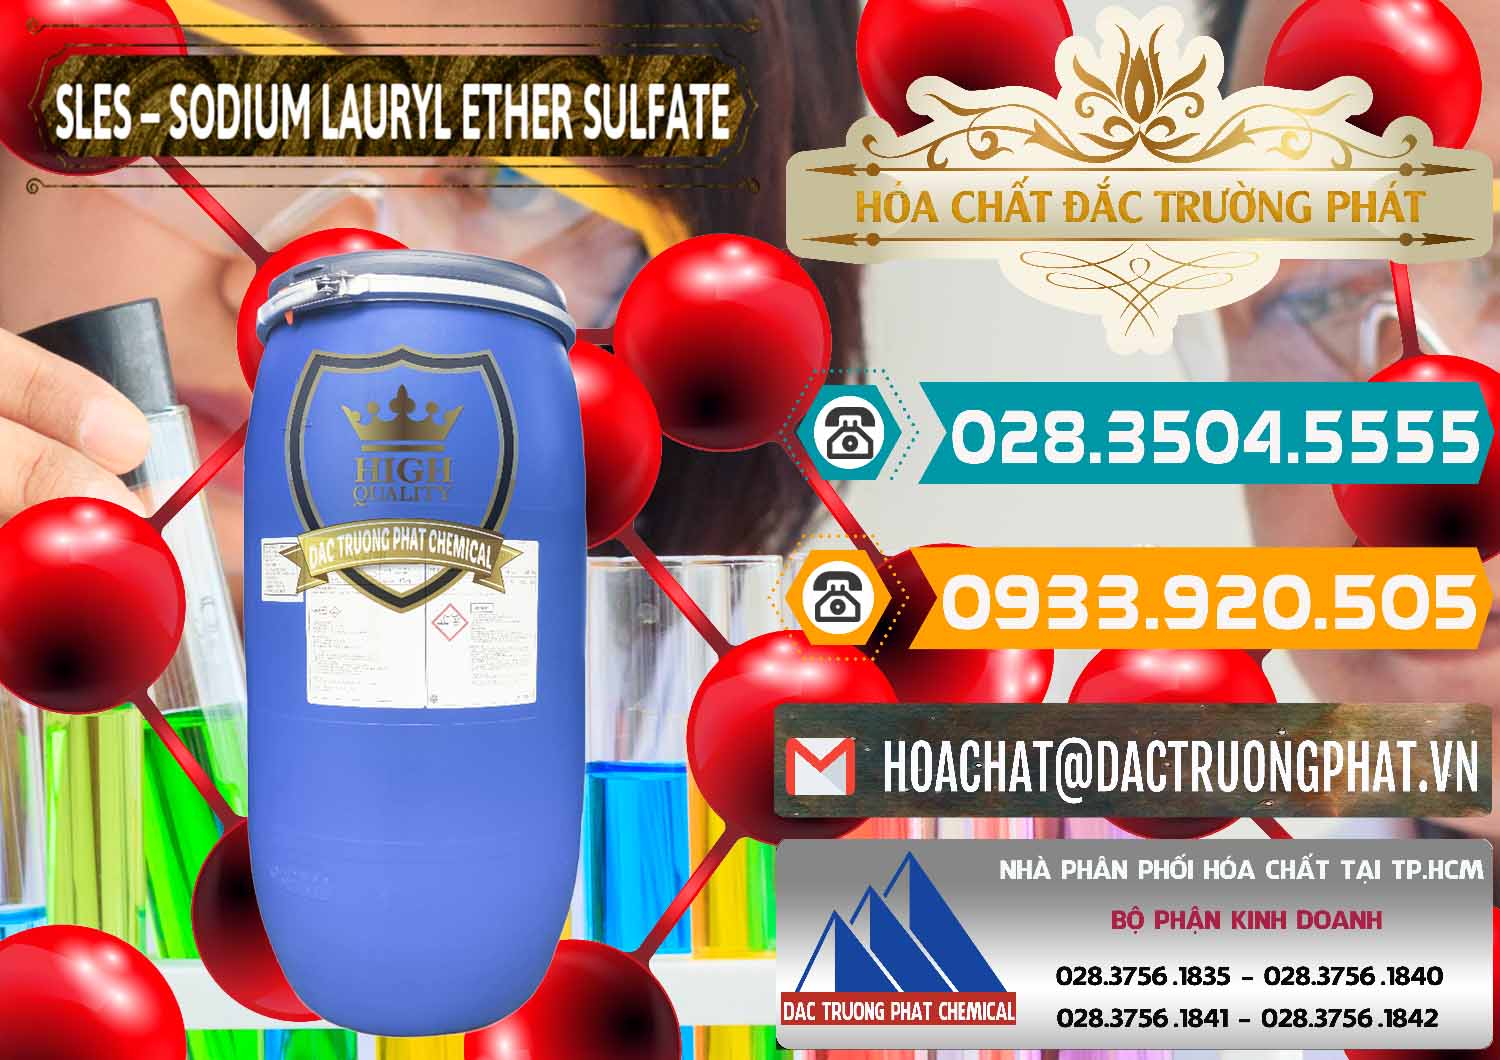 Cty bán & phân phối Chất Tạo Bọt Sles - Sodium Lauryl Ether Sulphate Kao Indonesia - 0046 - Chuyên cung cấp - bán hóa chất tại TP.HCM - congtyhoachat.vn